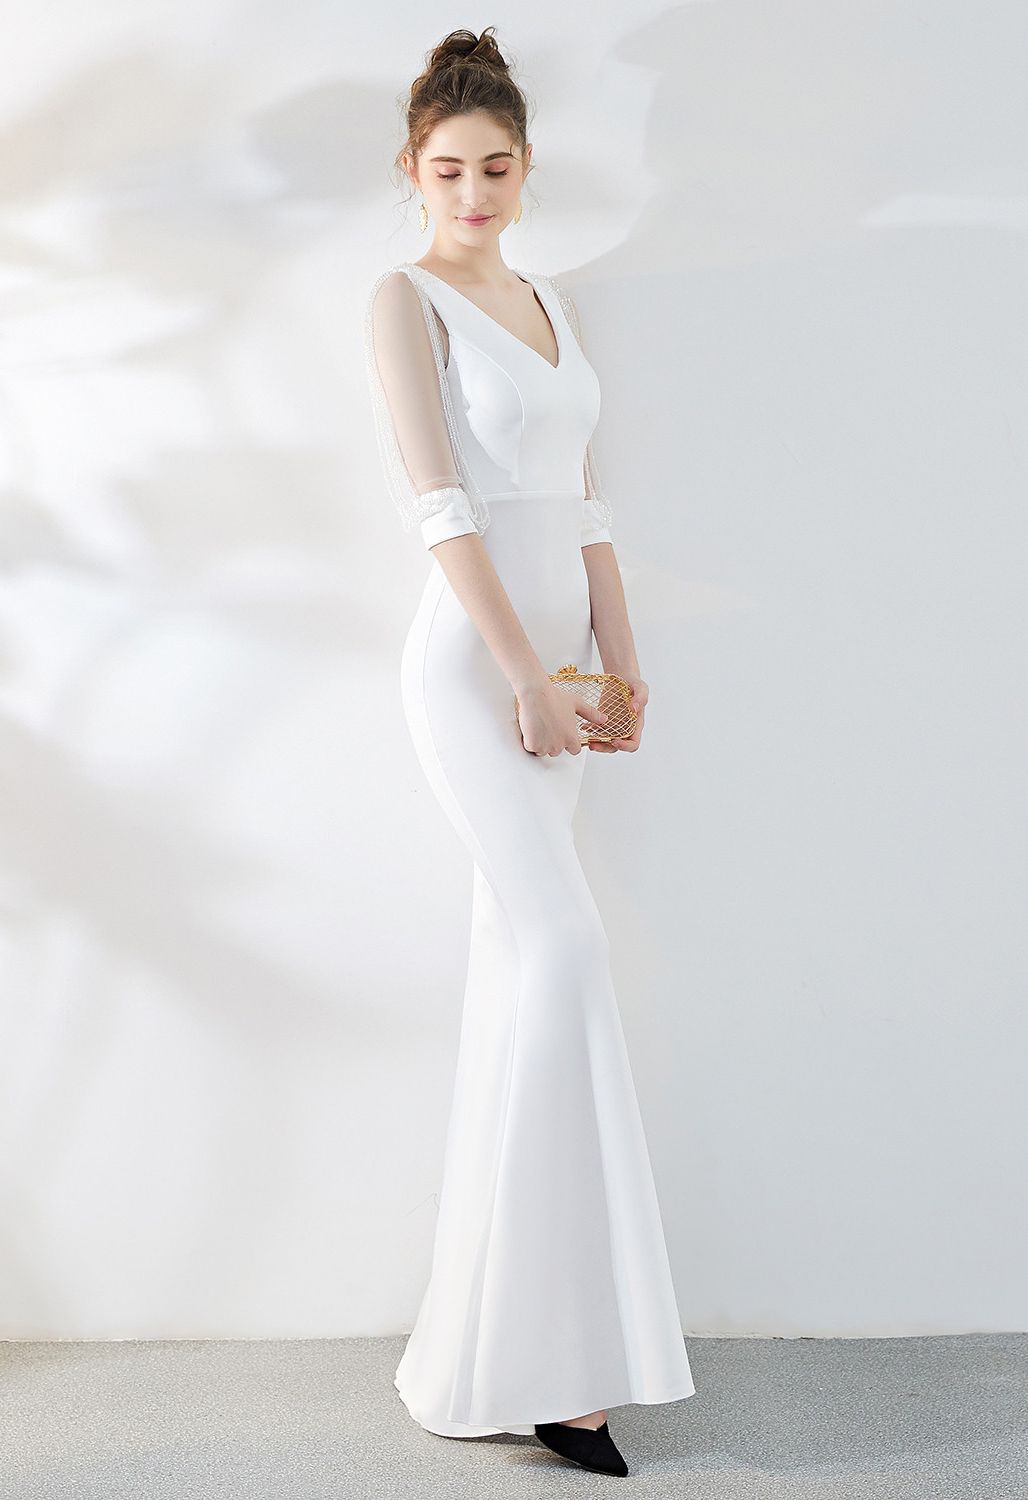 فستان بأكمام شبكية مطرزة بالخرز باللون الأبيض